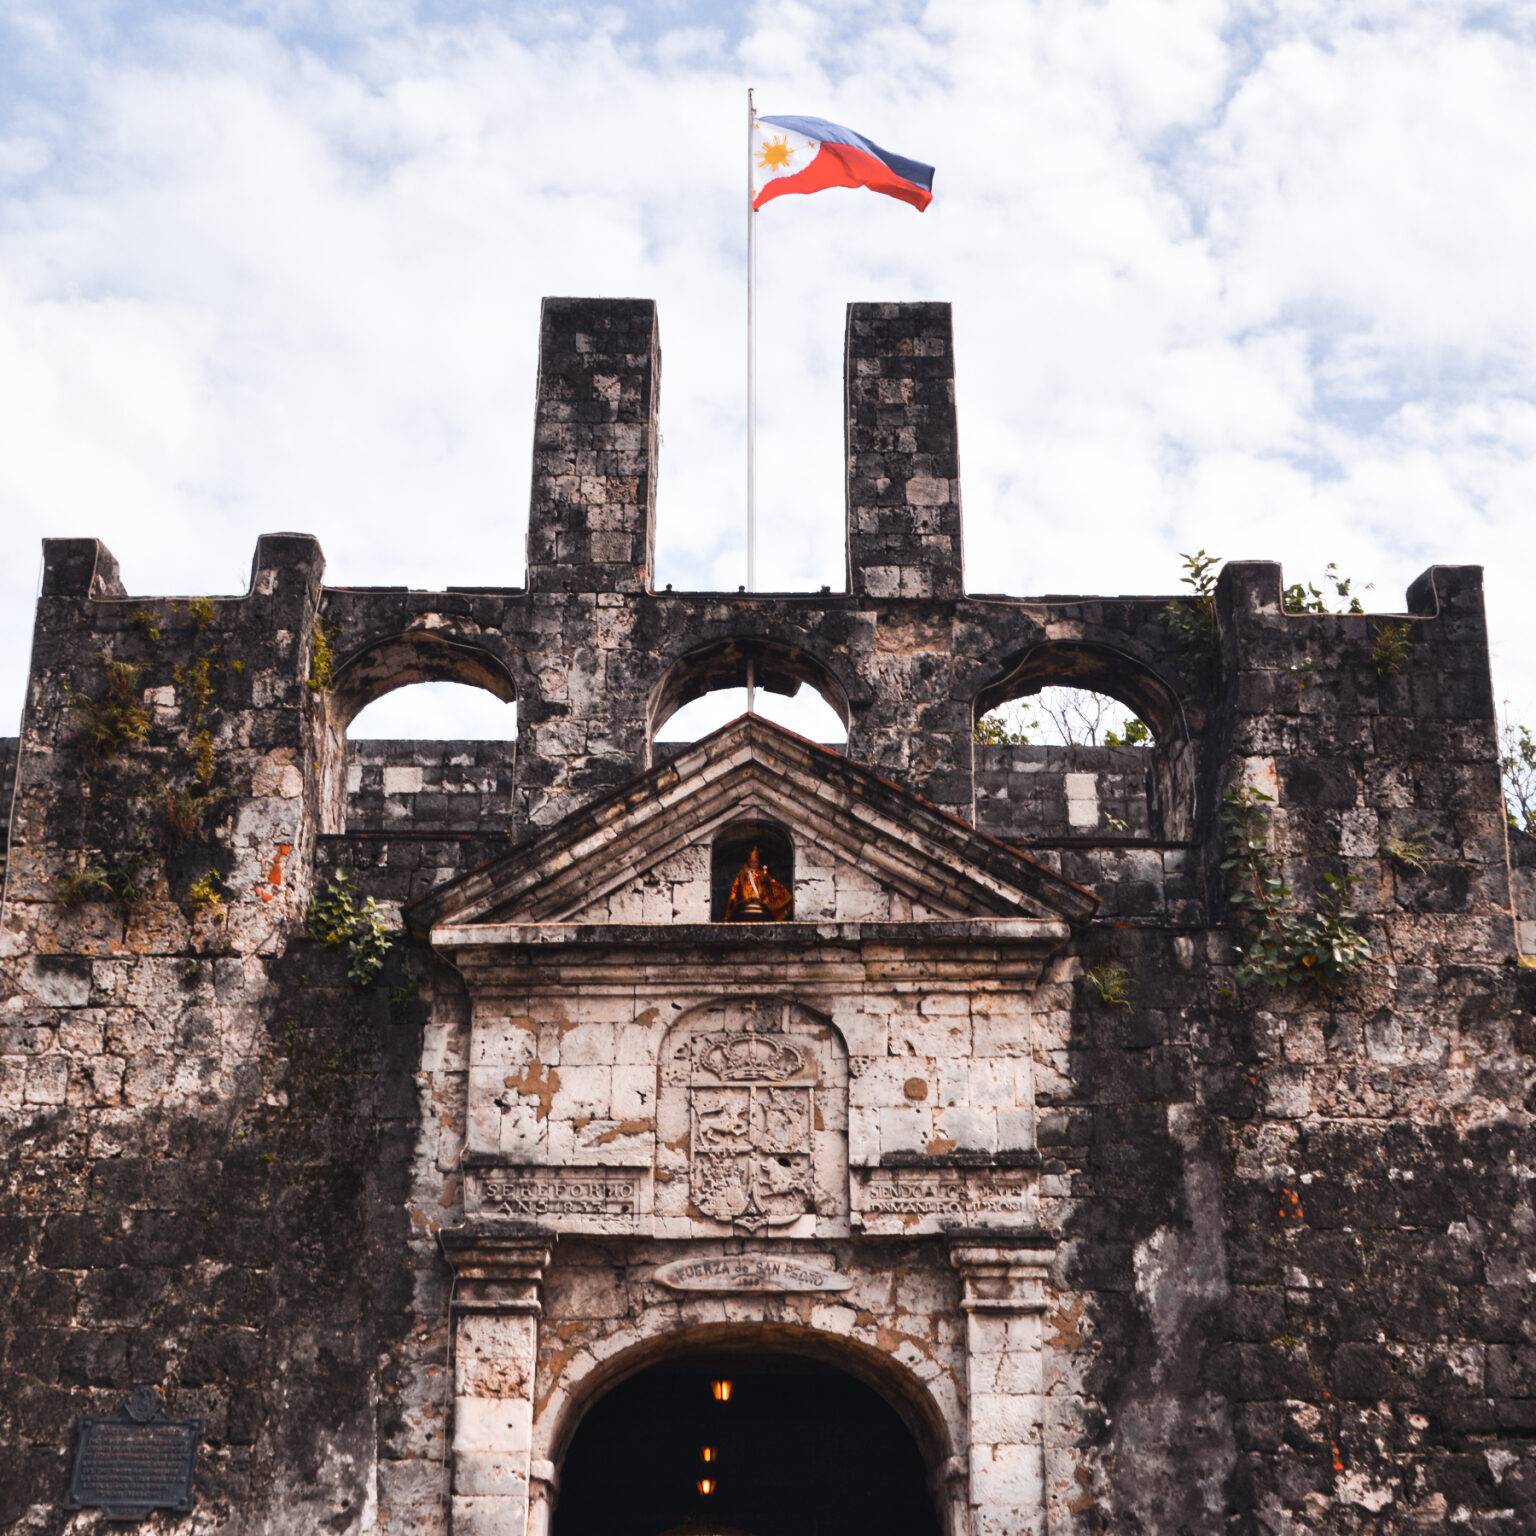 Ein altes und großes steinernes Gebäude mit der Fahne der Philippinen.